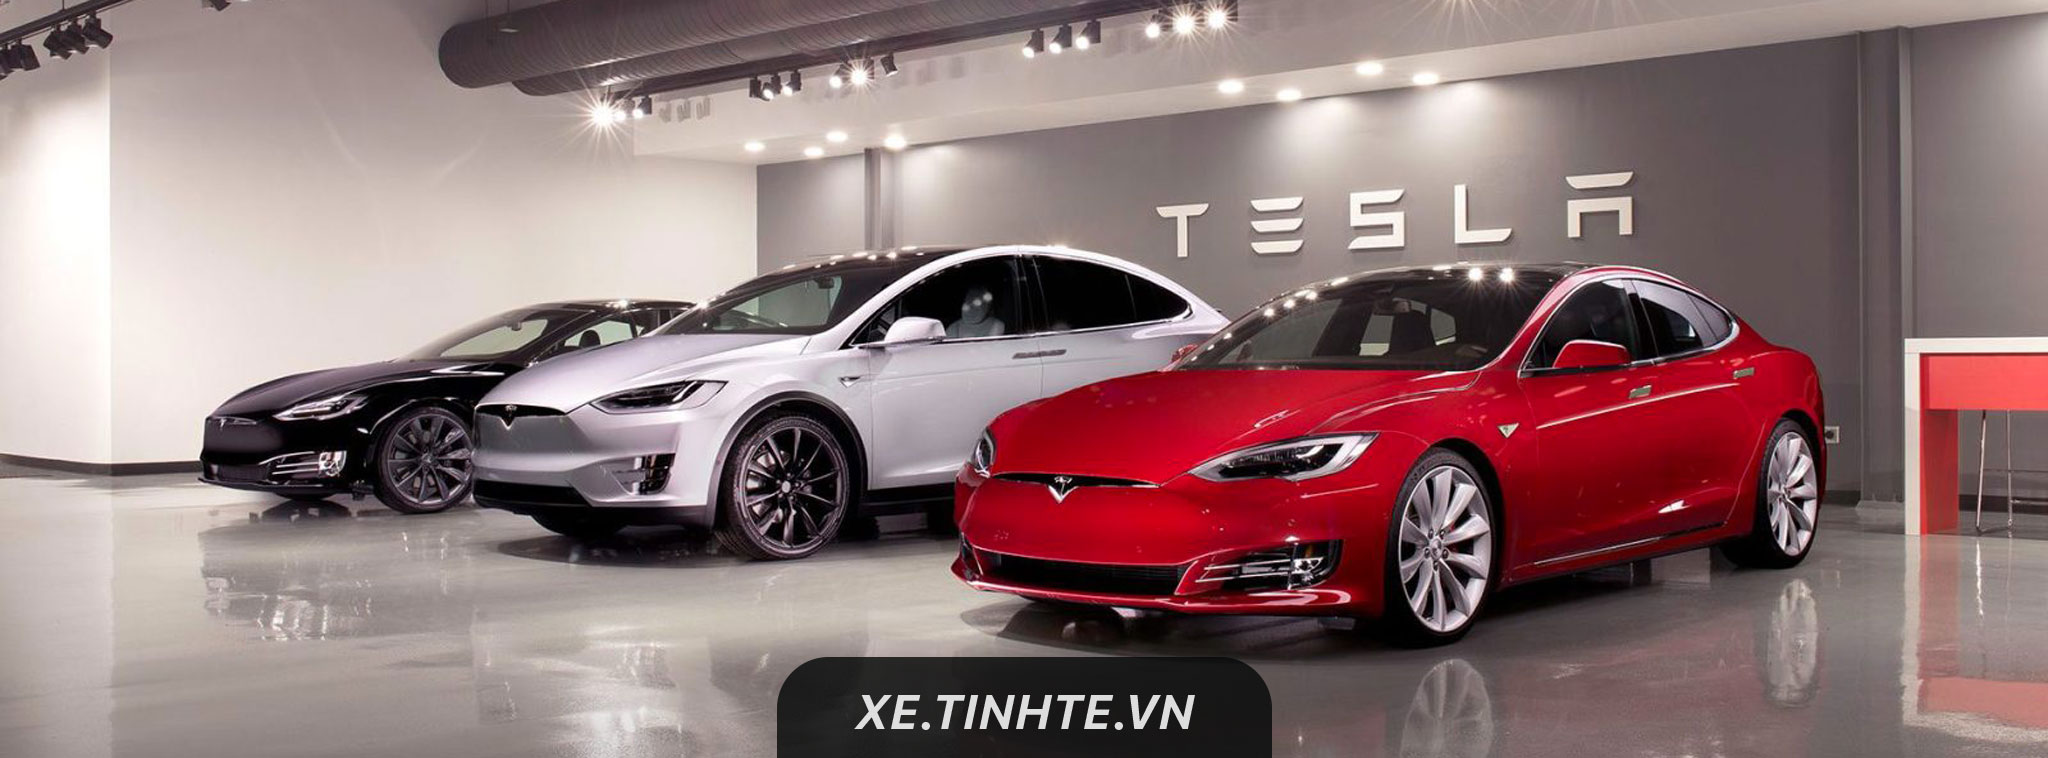 Tesla đã giao hơn 100.000 xe điện trong năm 2017, vẫn đang chật vật để sản xuất Model 3